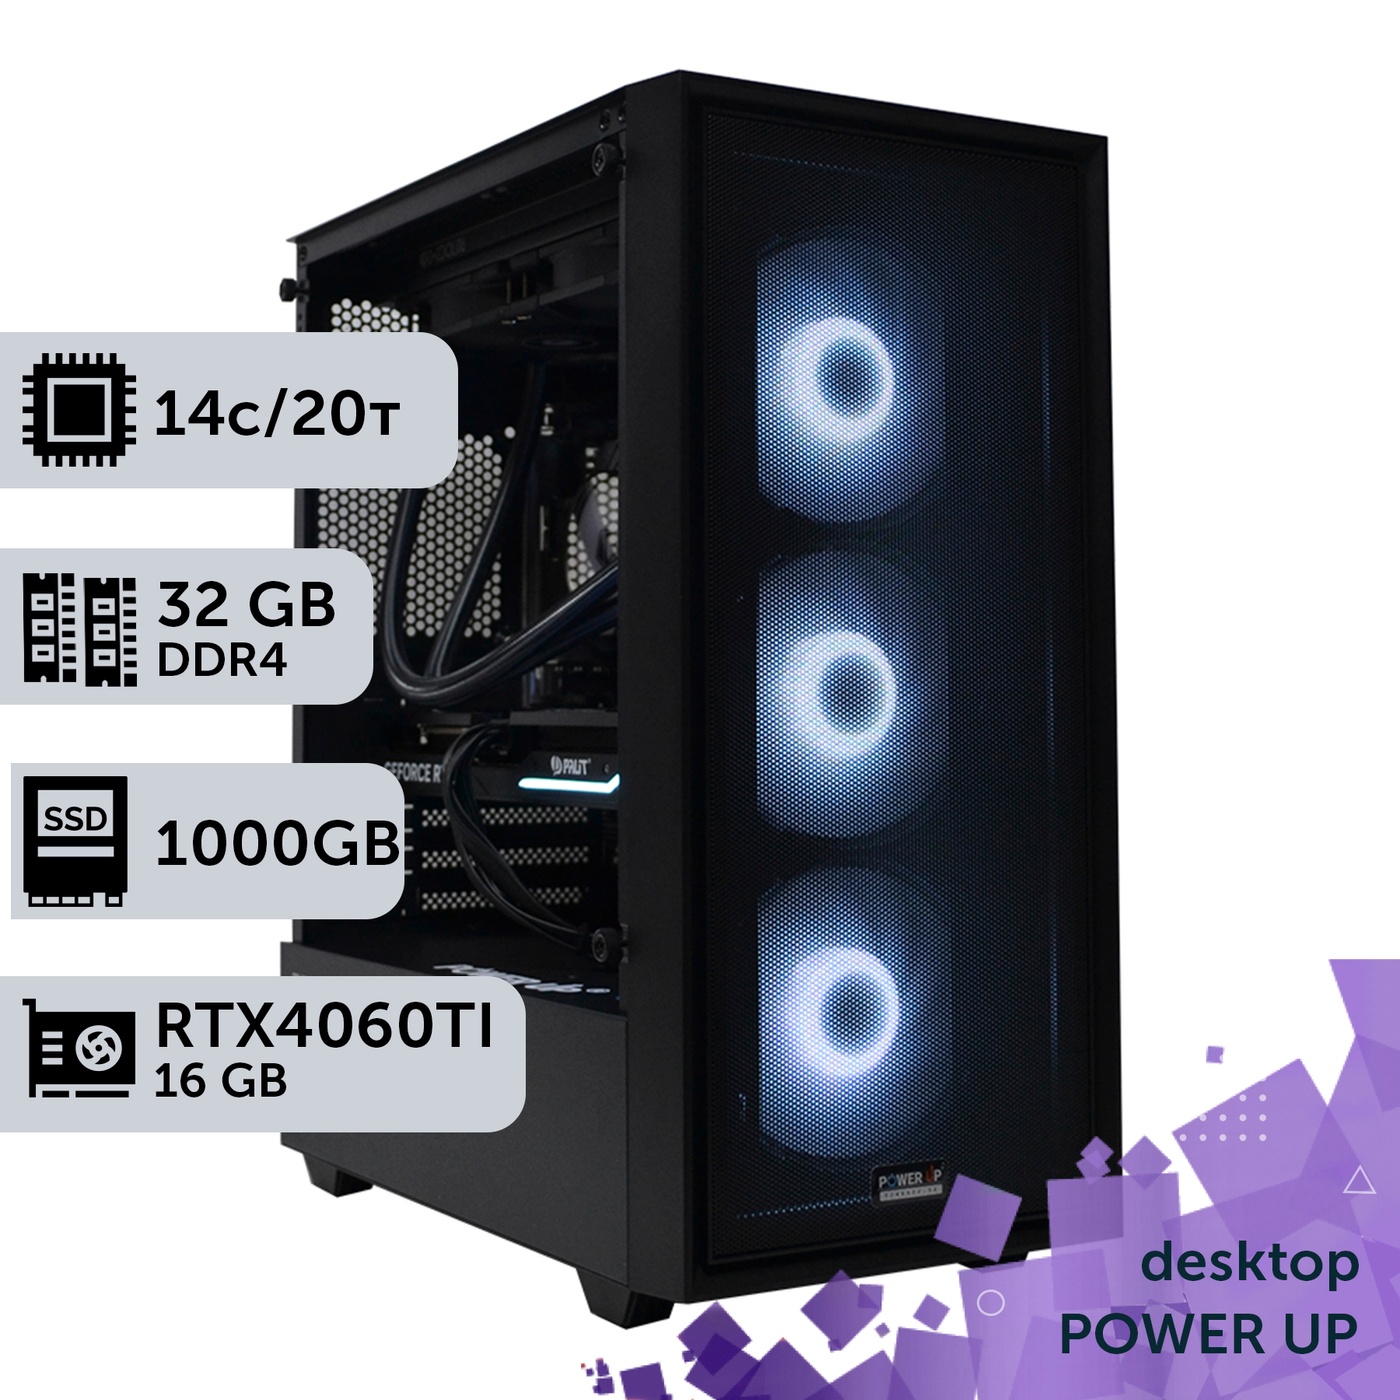 Робоча станція PowerUp Desktop #284 Core i5 13600K/32 GB/SSD 1TB/GeForce RTX 4060Ti 16GB